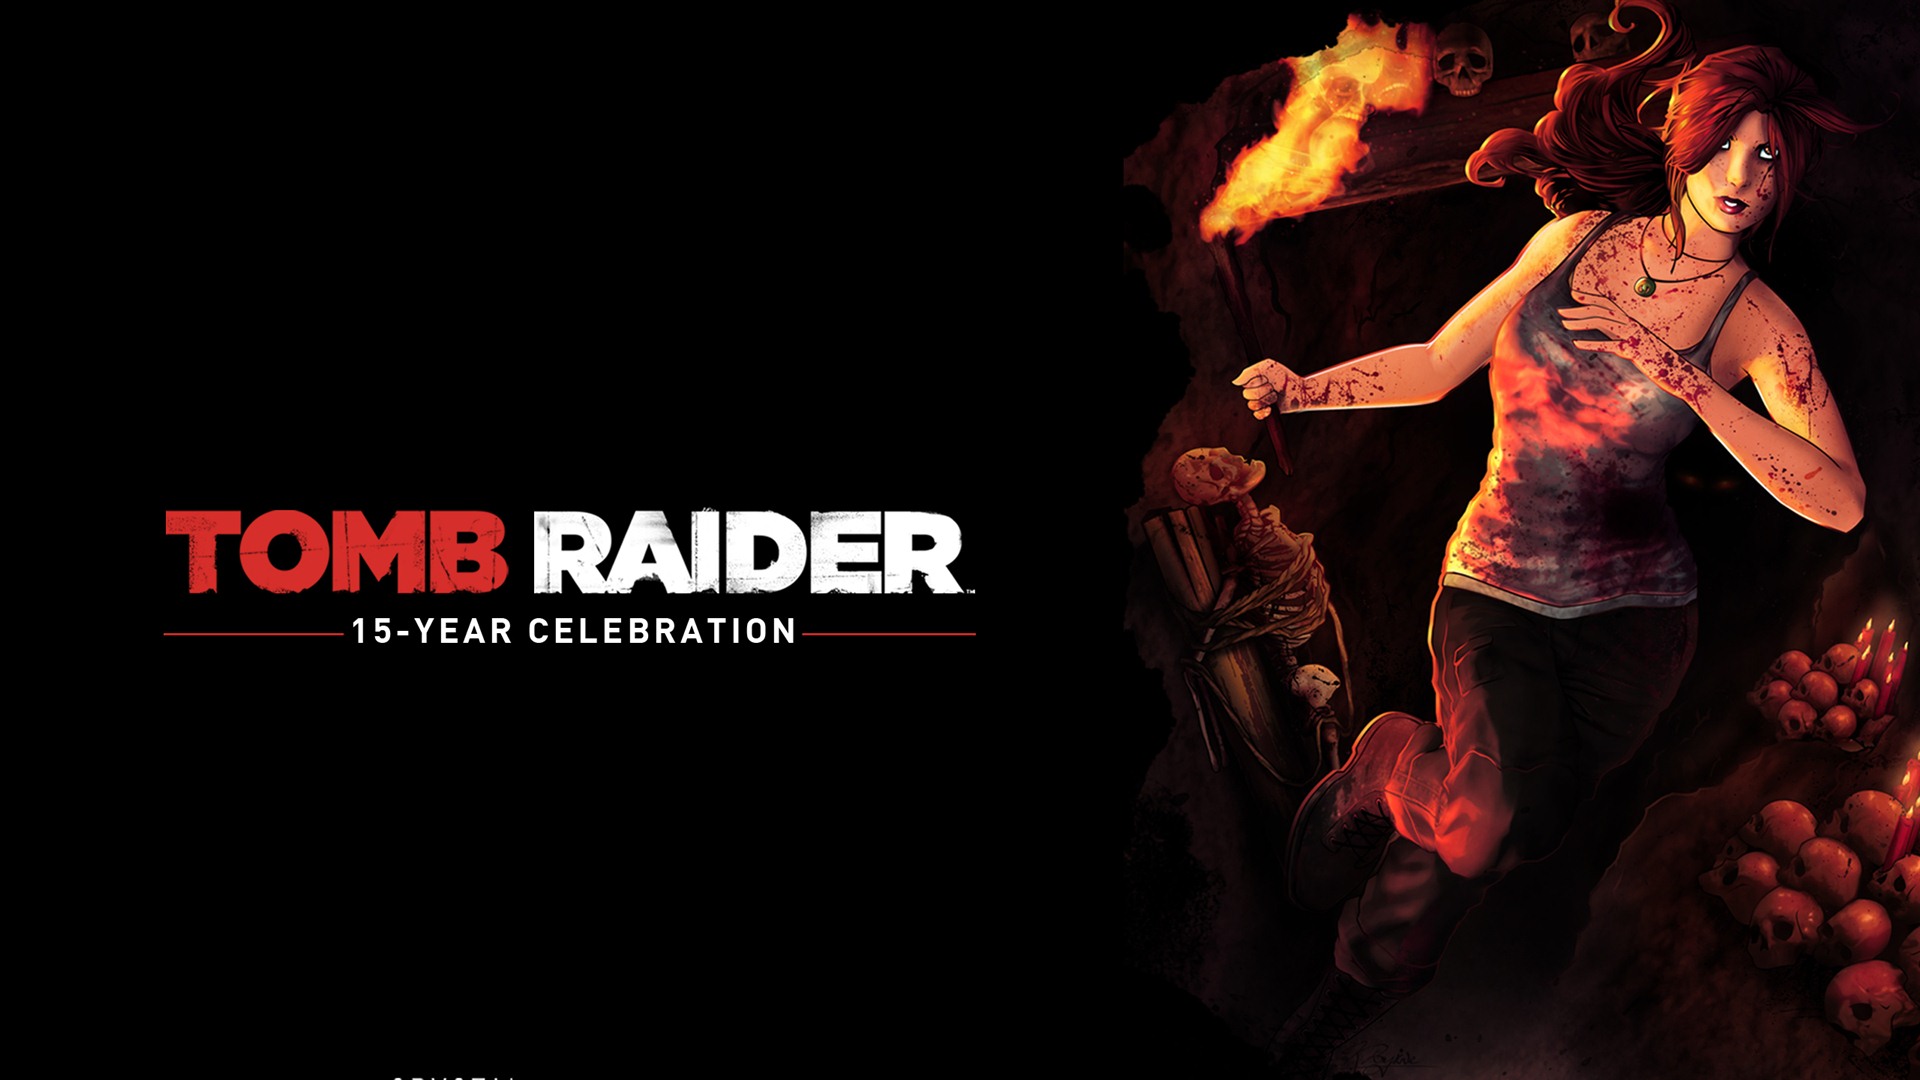 Tomb Raider 15-Year Celebration 古墓丽影15周年纪念版 高清壁纸4 - 1920x1080